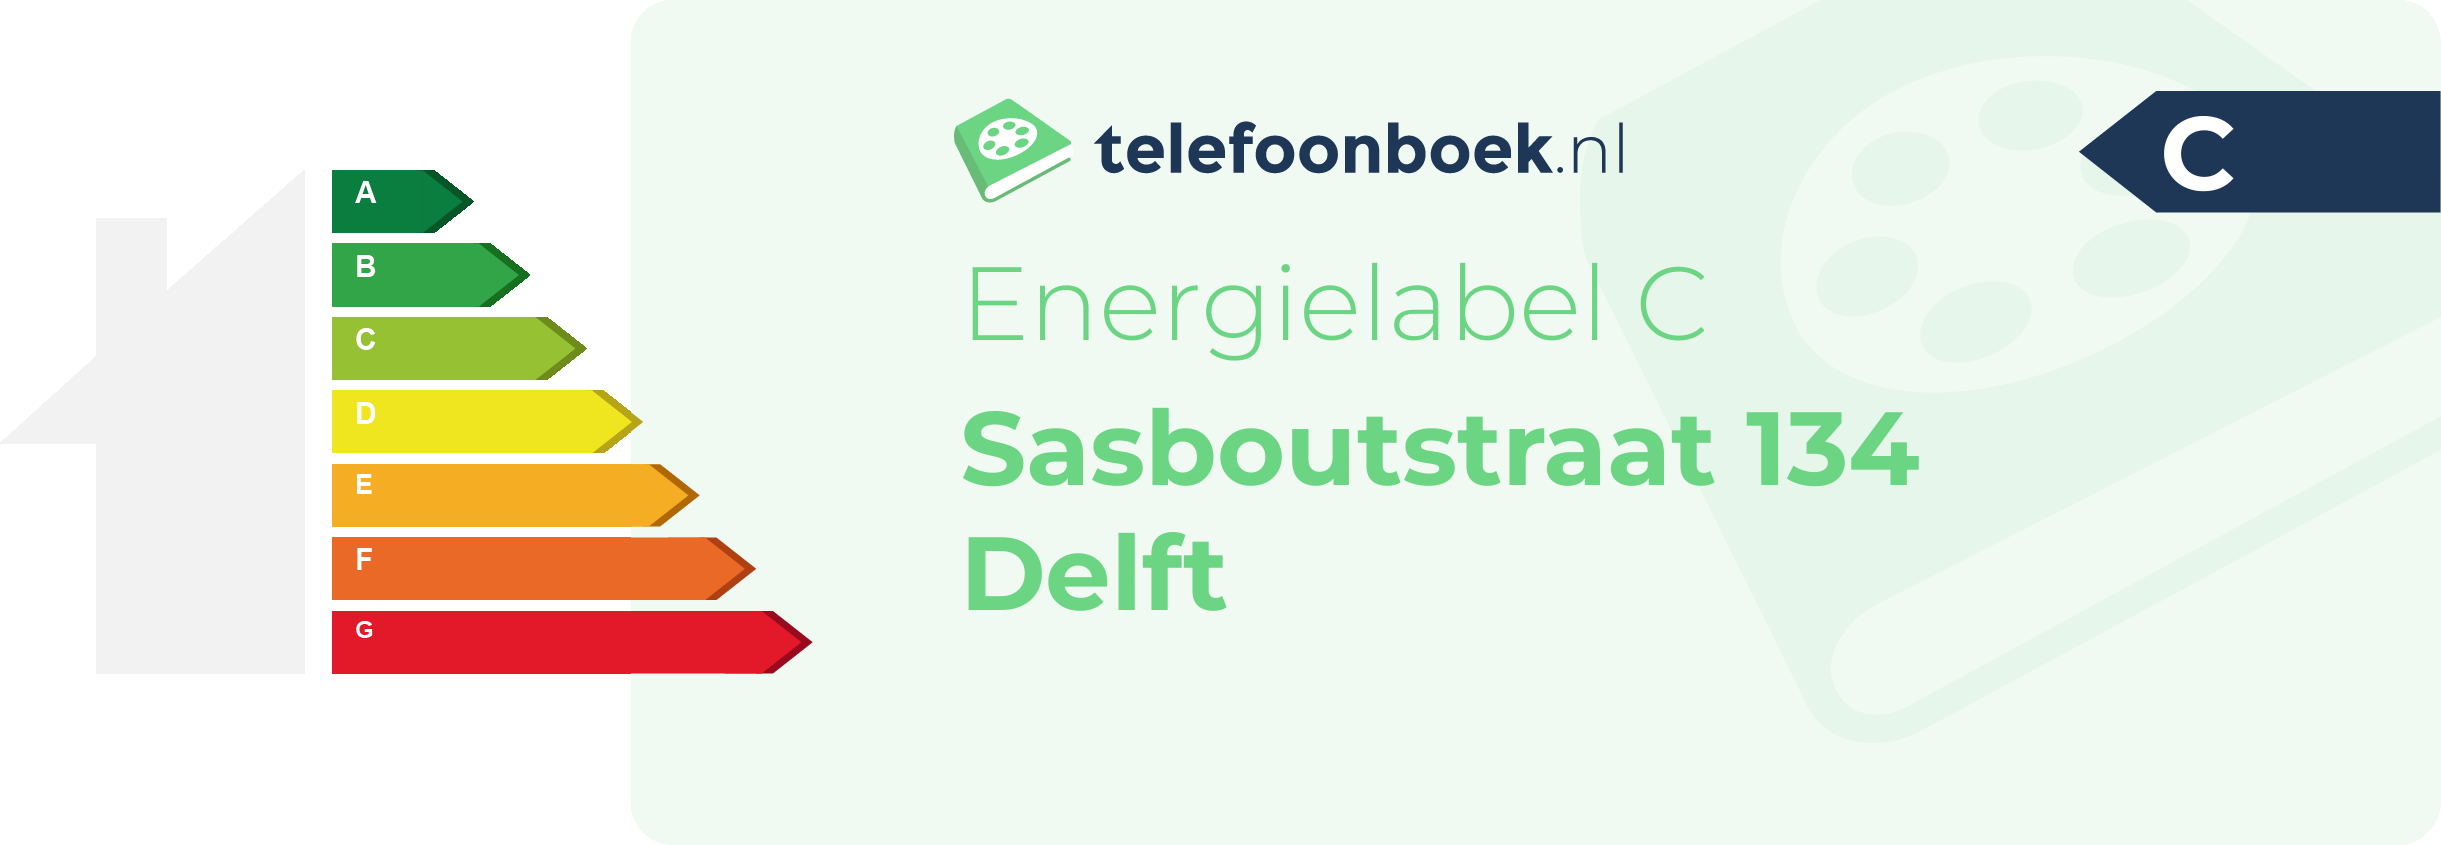 Energielabel Sasboutstraat 134 Delft